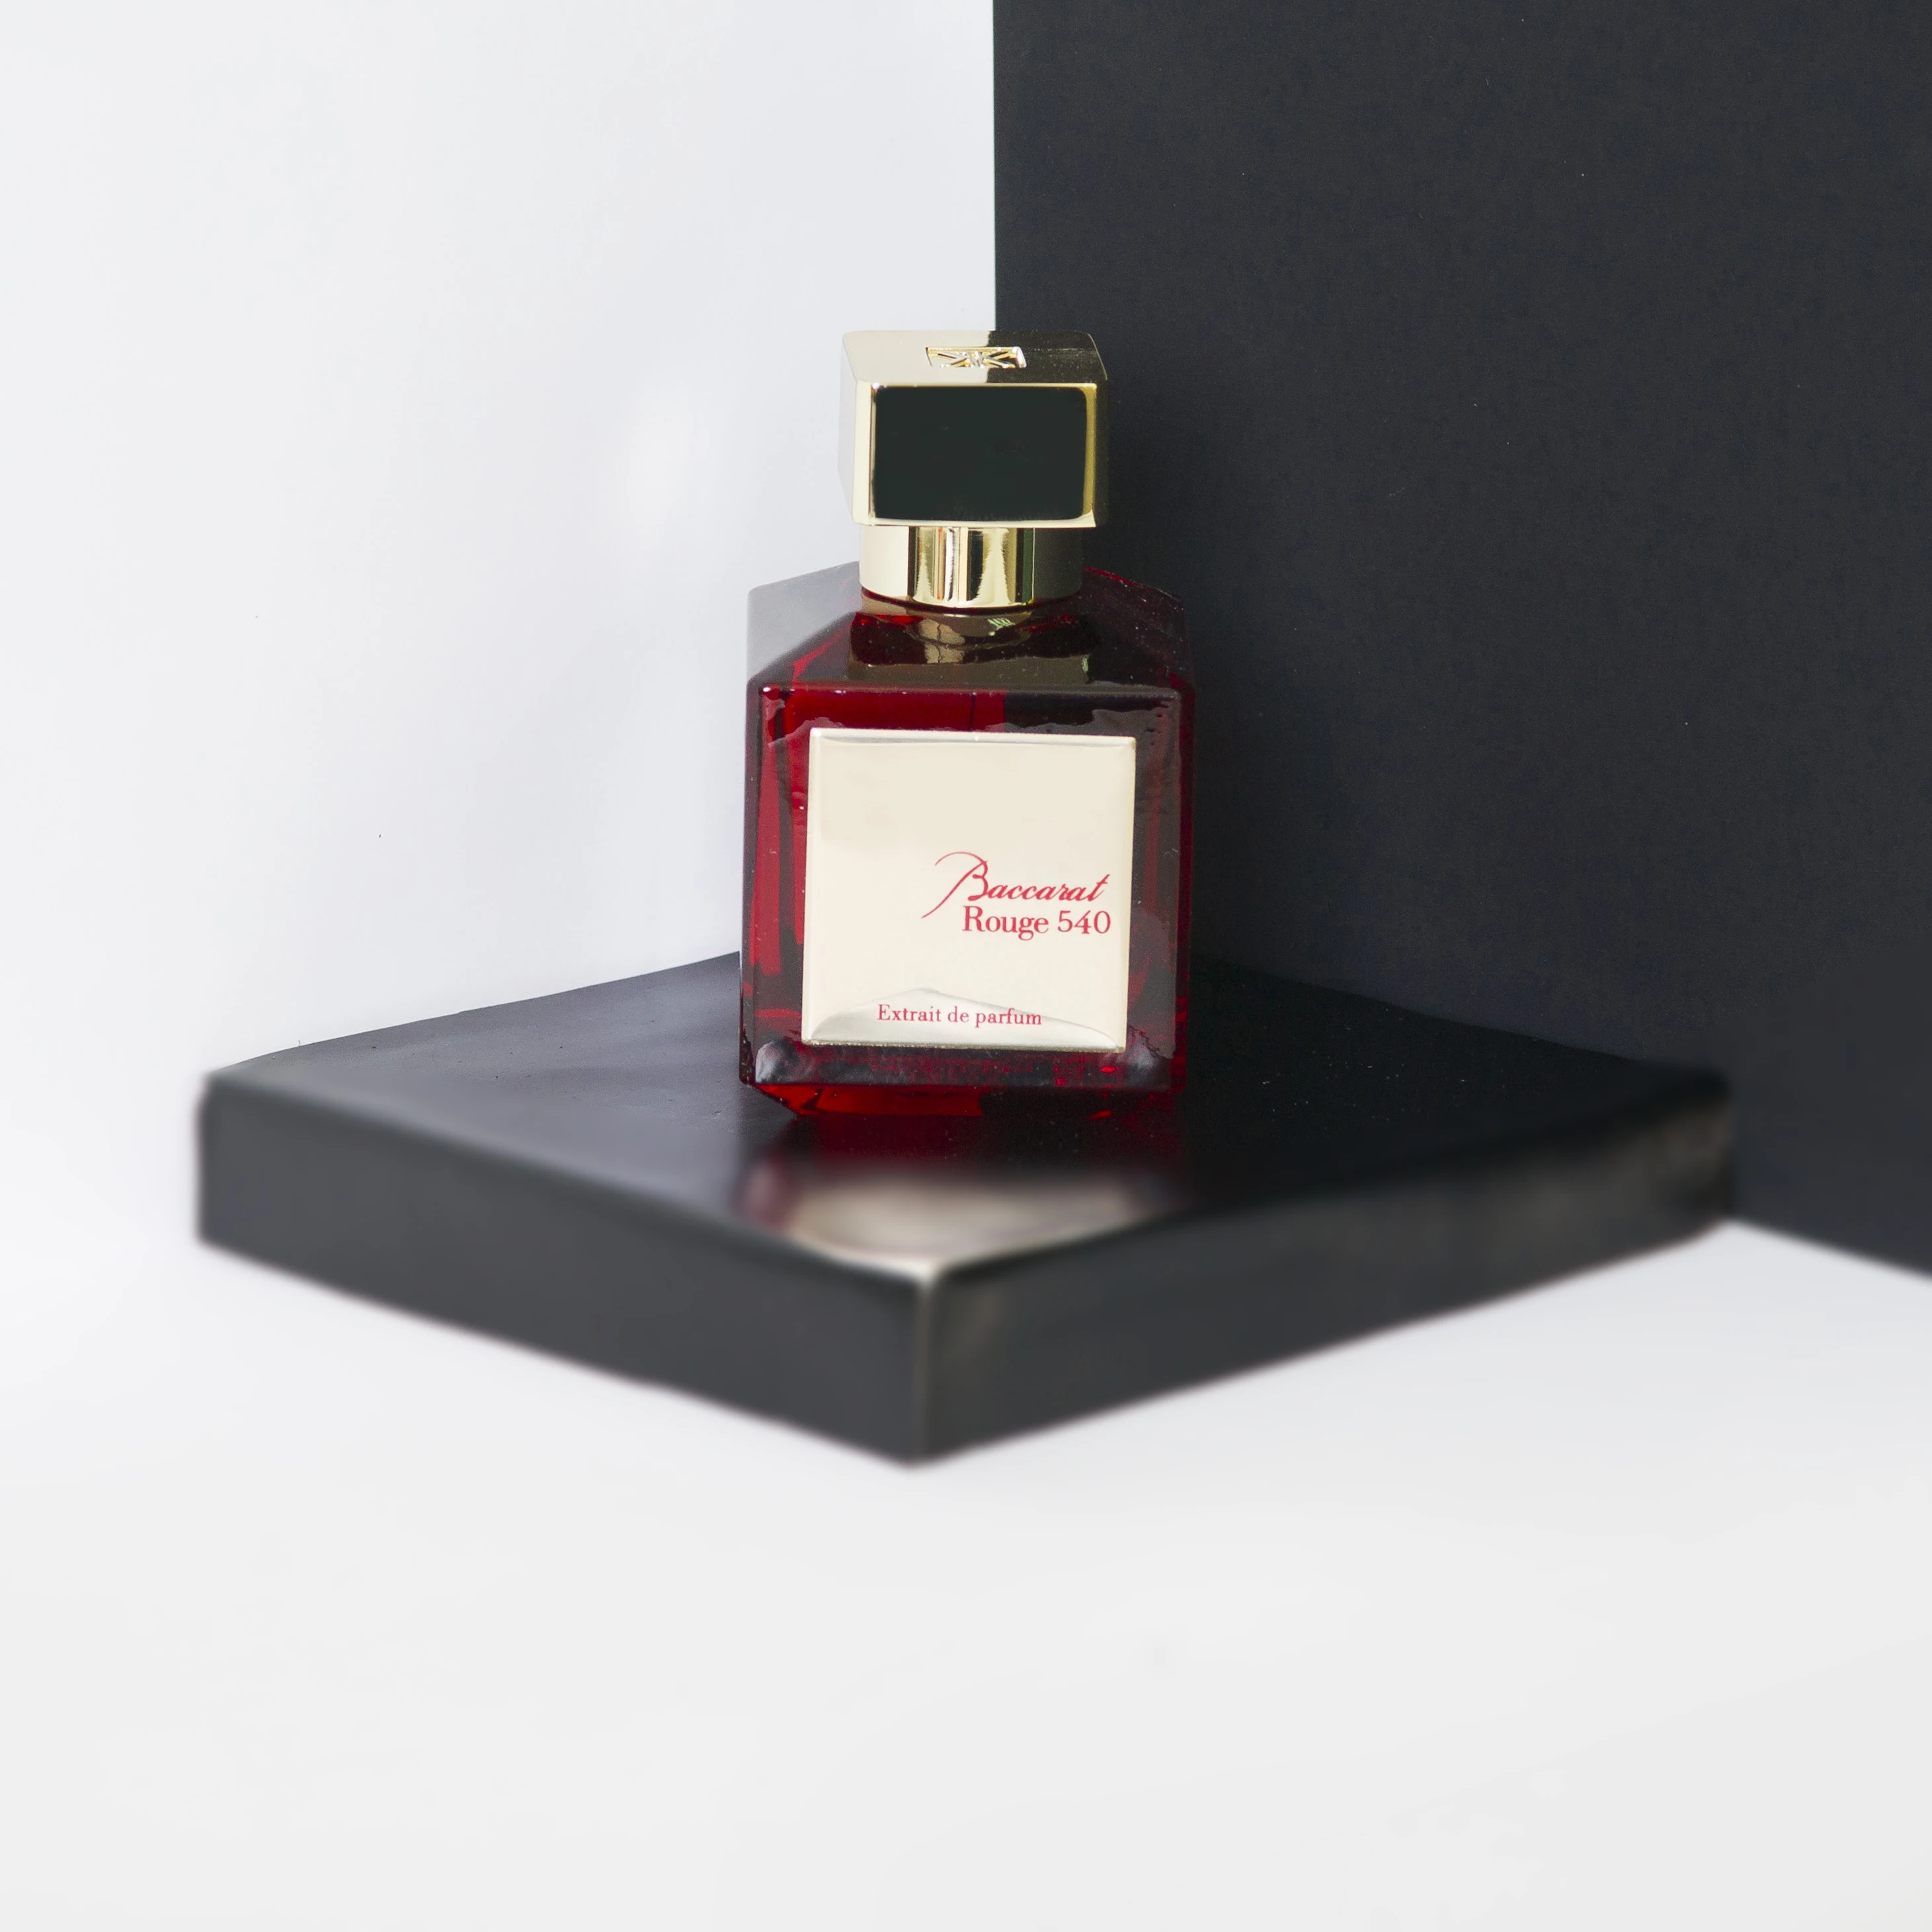 Sexuellement Baccarat Rouge 540, extrait de parfum paring 5/10/15/20/30 ml,  600 bakkarat 540 rouge - AliExpress